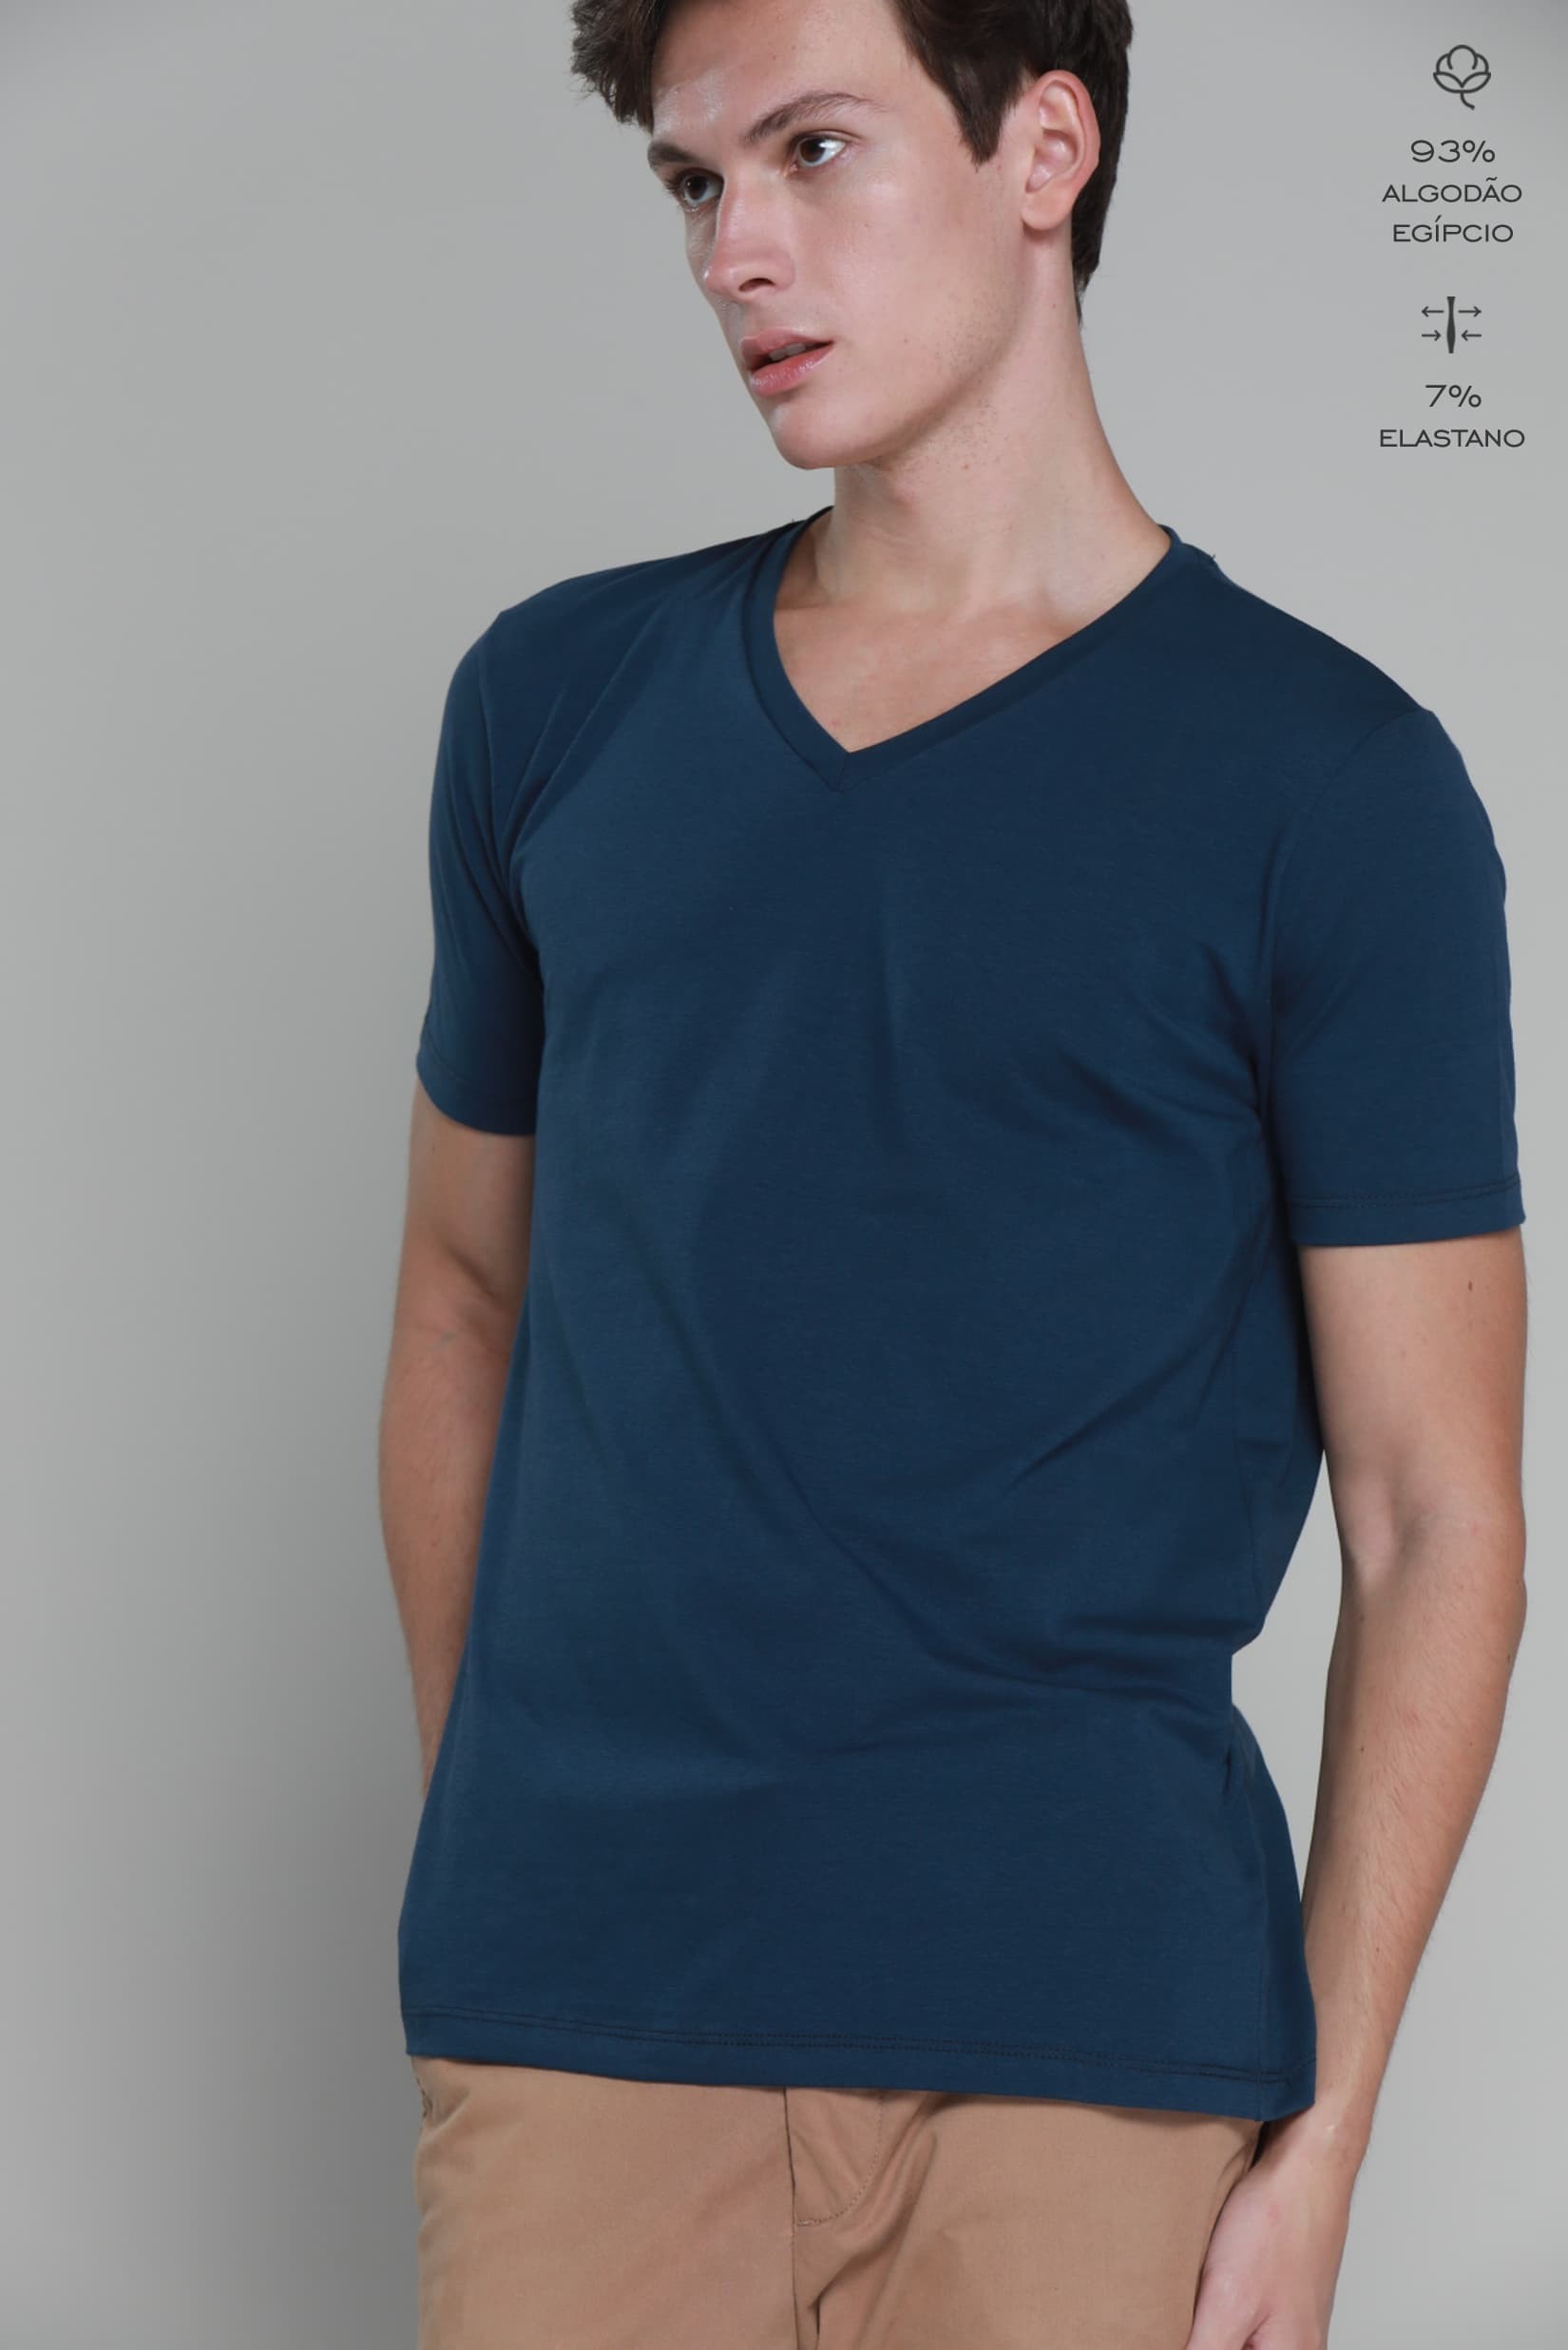 Kit Camiseta Básica Algodão Egípcio Gola V Azul Marinho